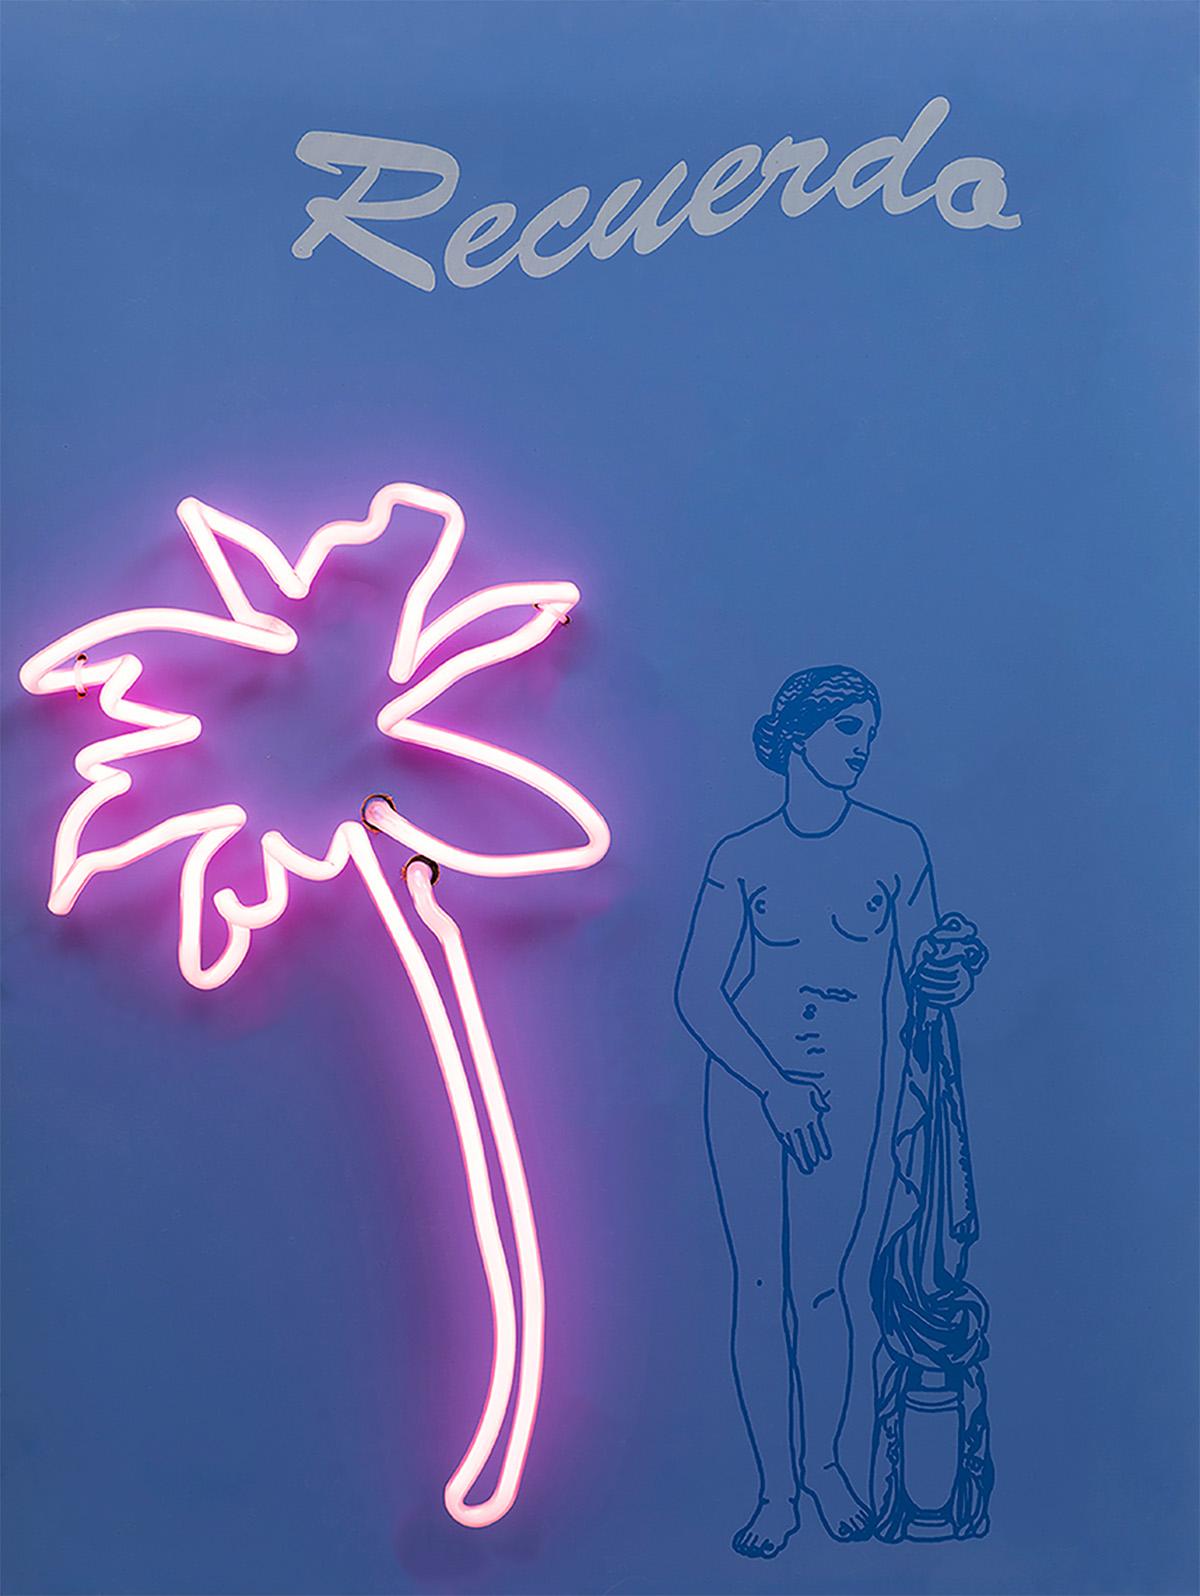 Recuerdo Aphrodite und La Mer Poseidon Diptychon, 2019  Paloma Castello 
Aus der Serie Neon Classics
Siebdruck mit Neonröhren
Gesamtgröße: 24 H in x 36,2 B x 5,9 T in. 
Individuelle Größe: 24 H in x 18,1 B x 5,9 T in. 
Auflage 7/10

In ihrer Arbeit